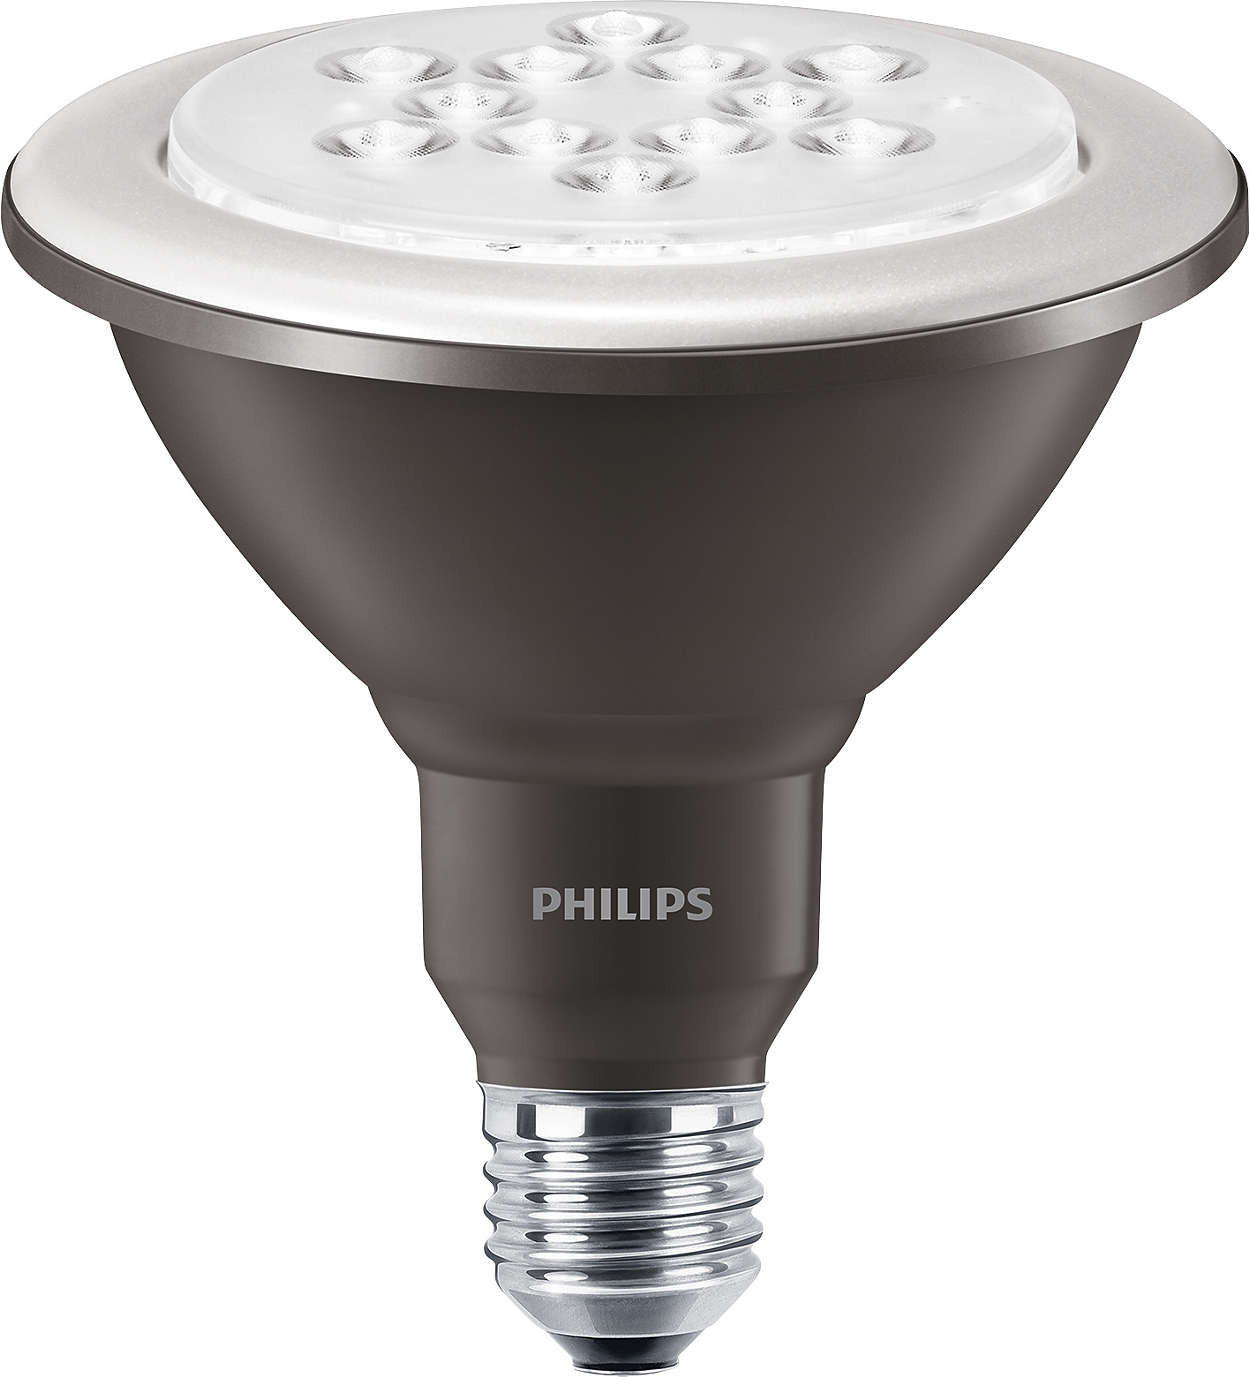 Philips MASTER LEDspot D 5.5-60W 827 PAR38 25D